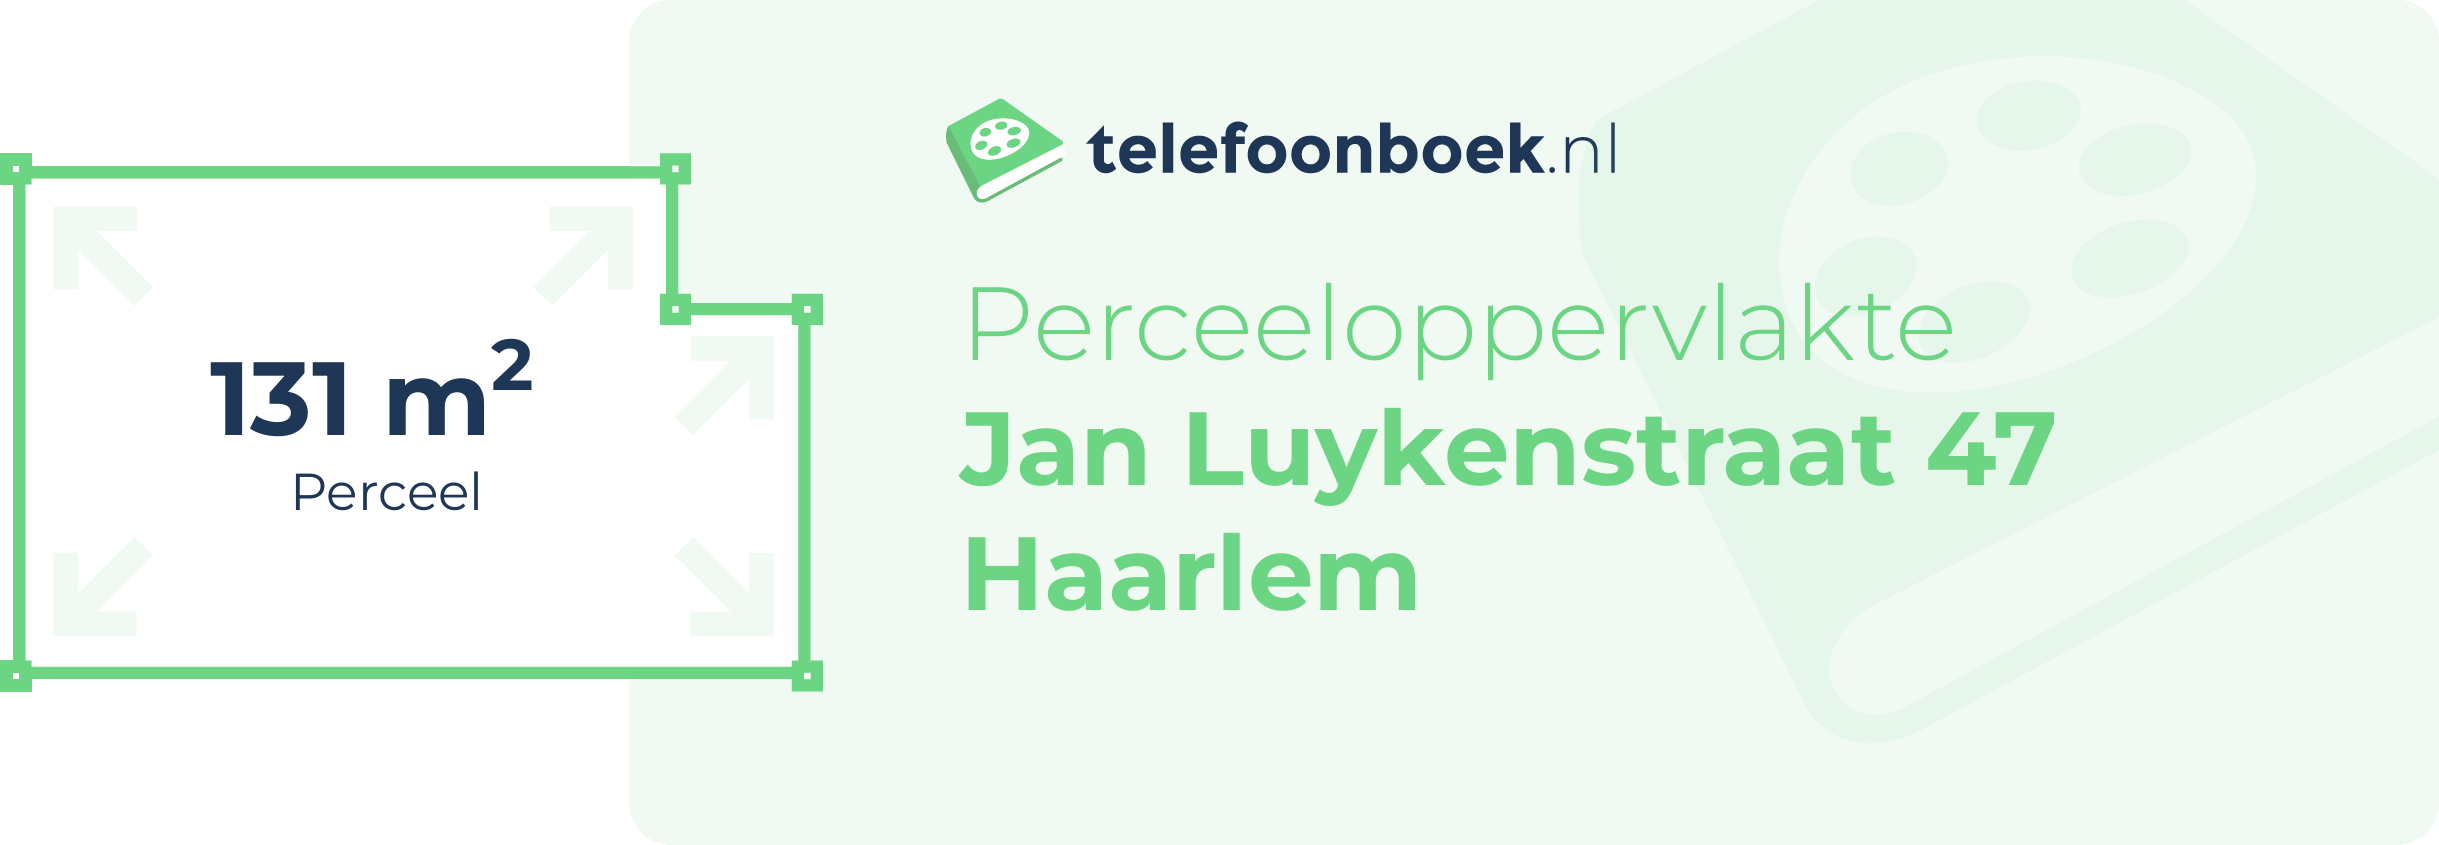 Perceeloppervlakte Jan Luykenstraat 47 Haarlem